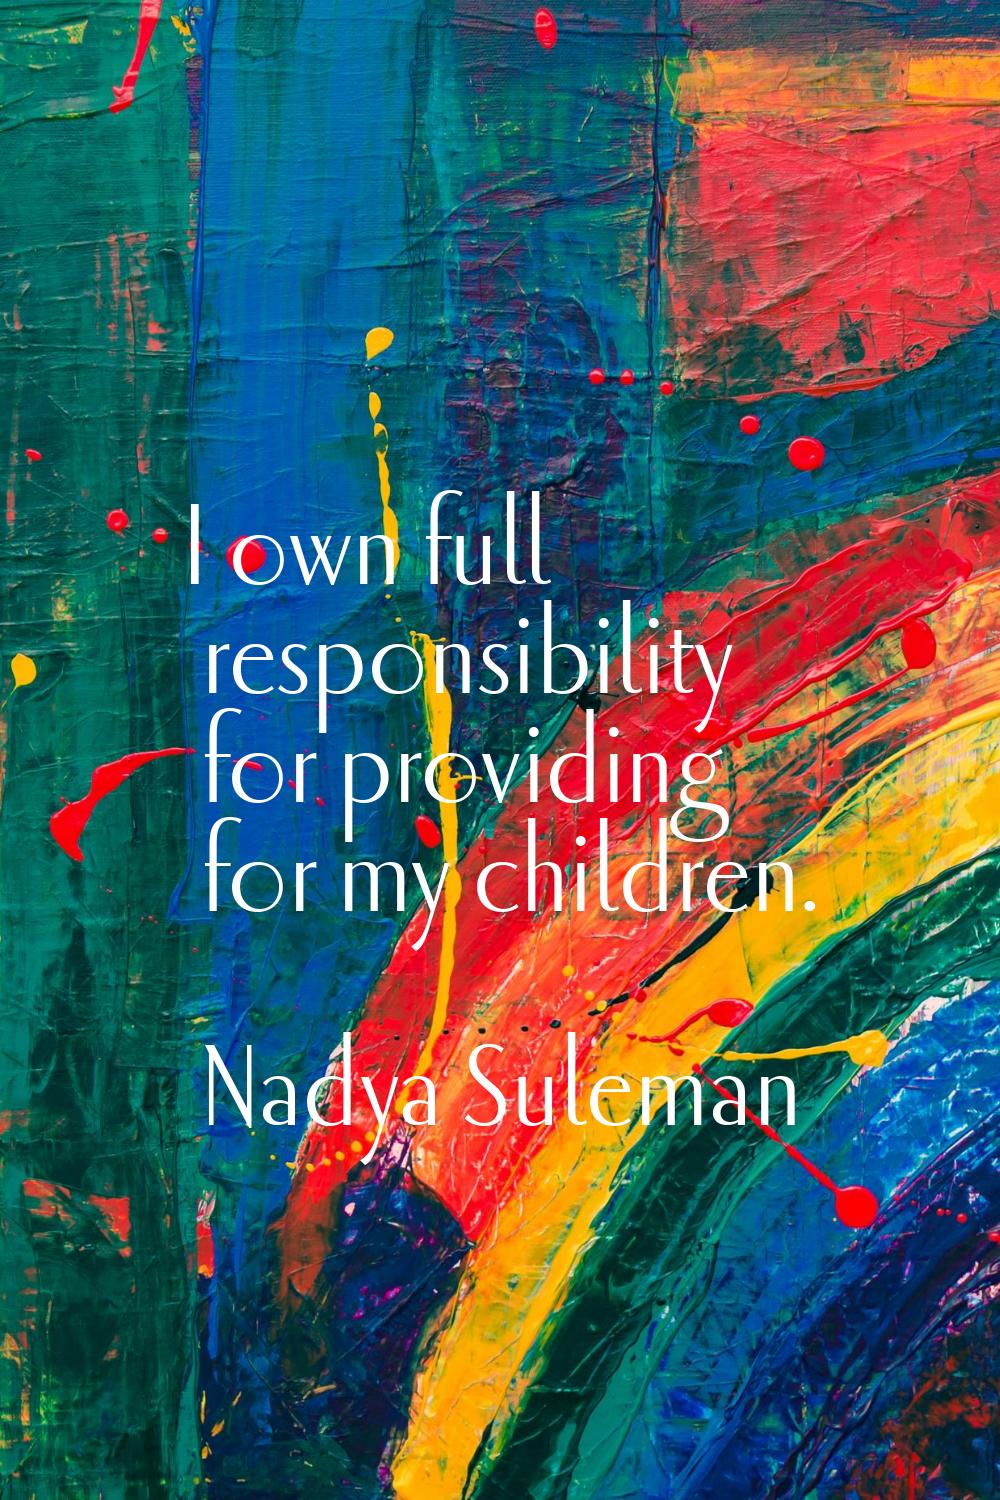 I own full responsibility for providing for my children.